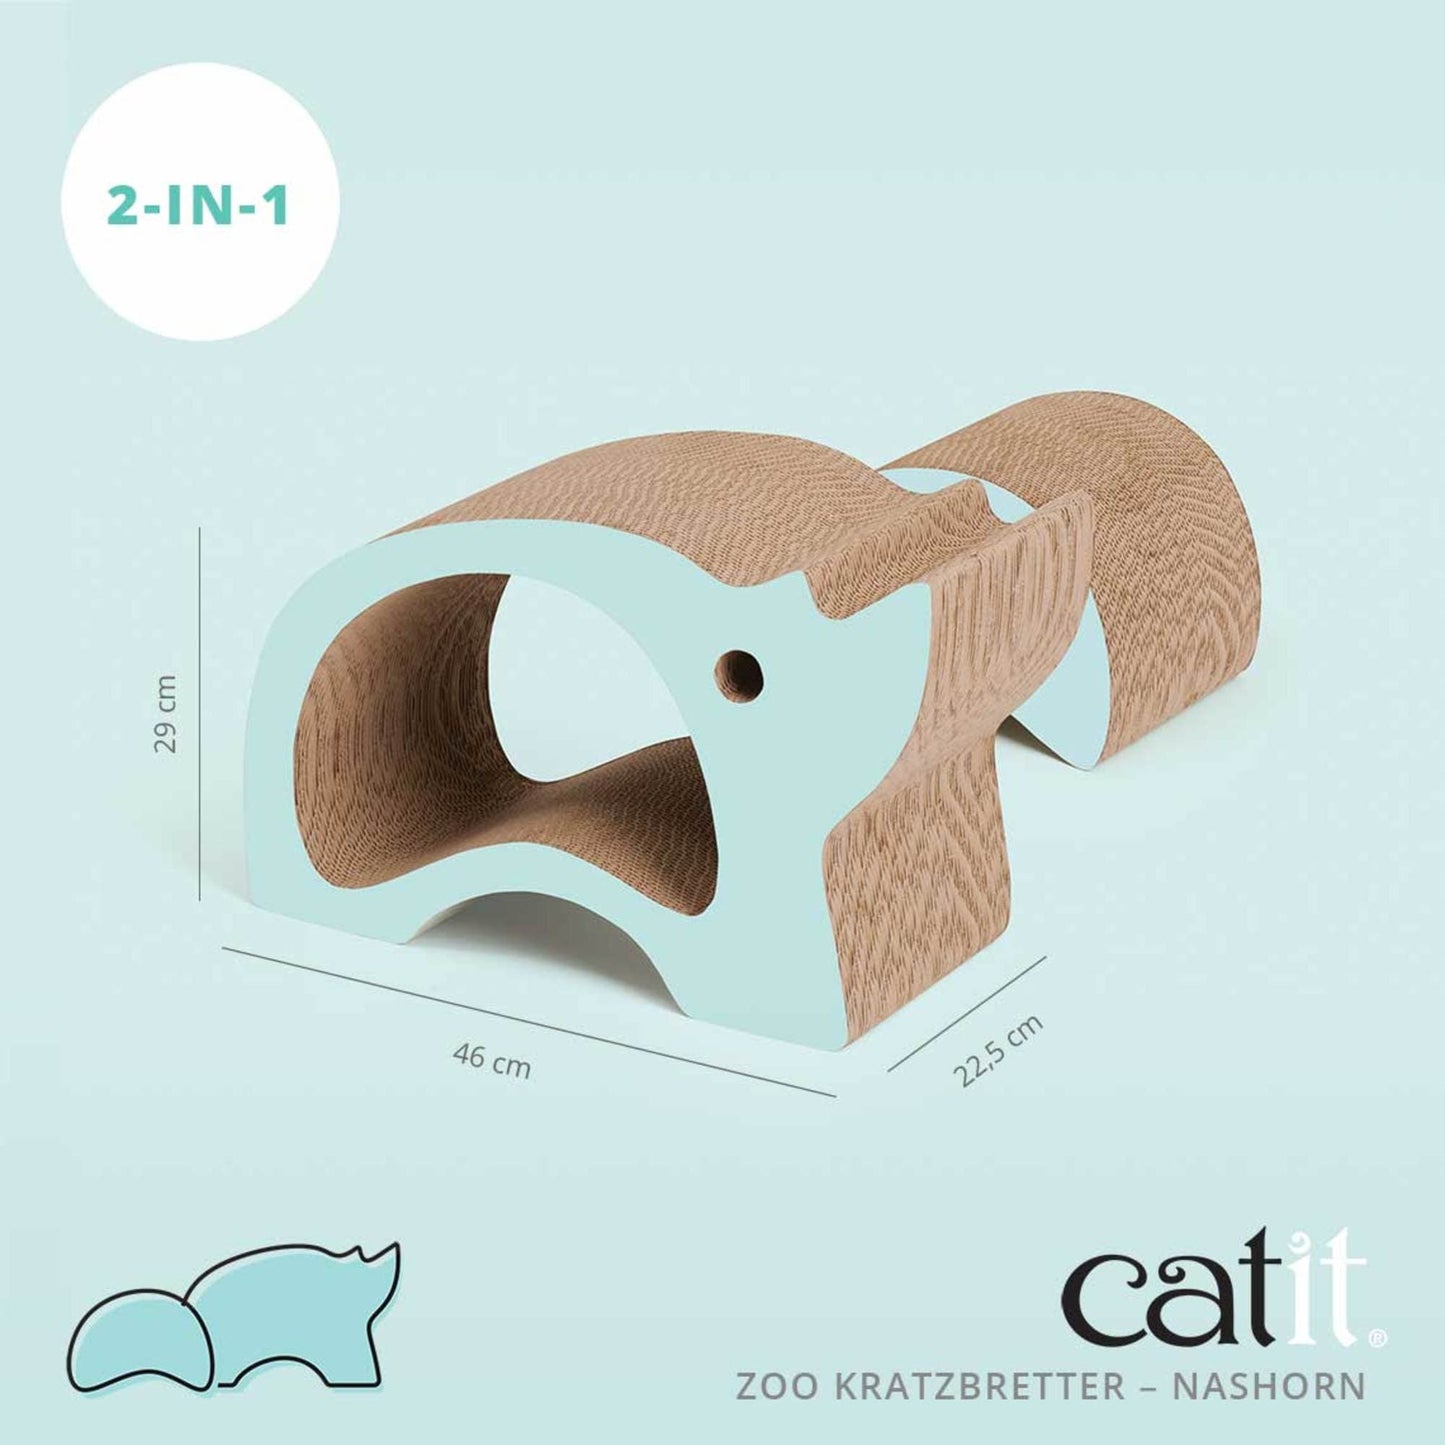 Catit Zoo Kratzbretter ─ Nashorn